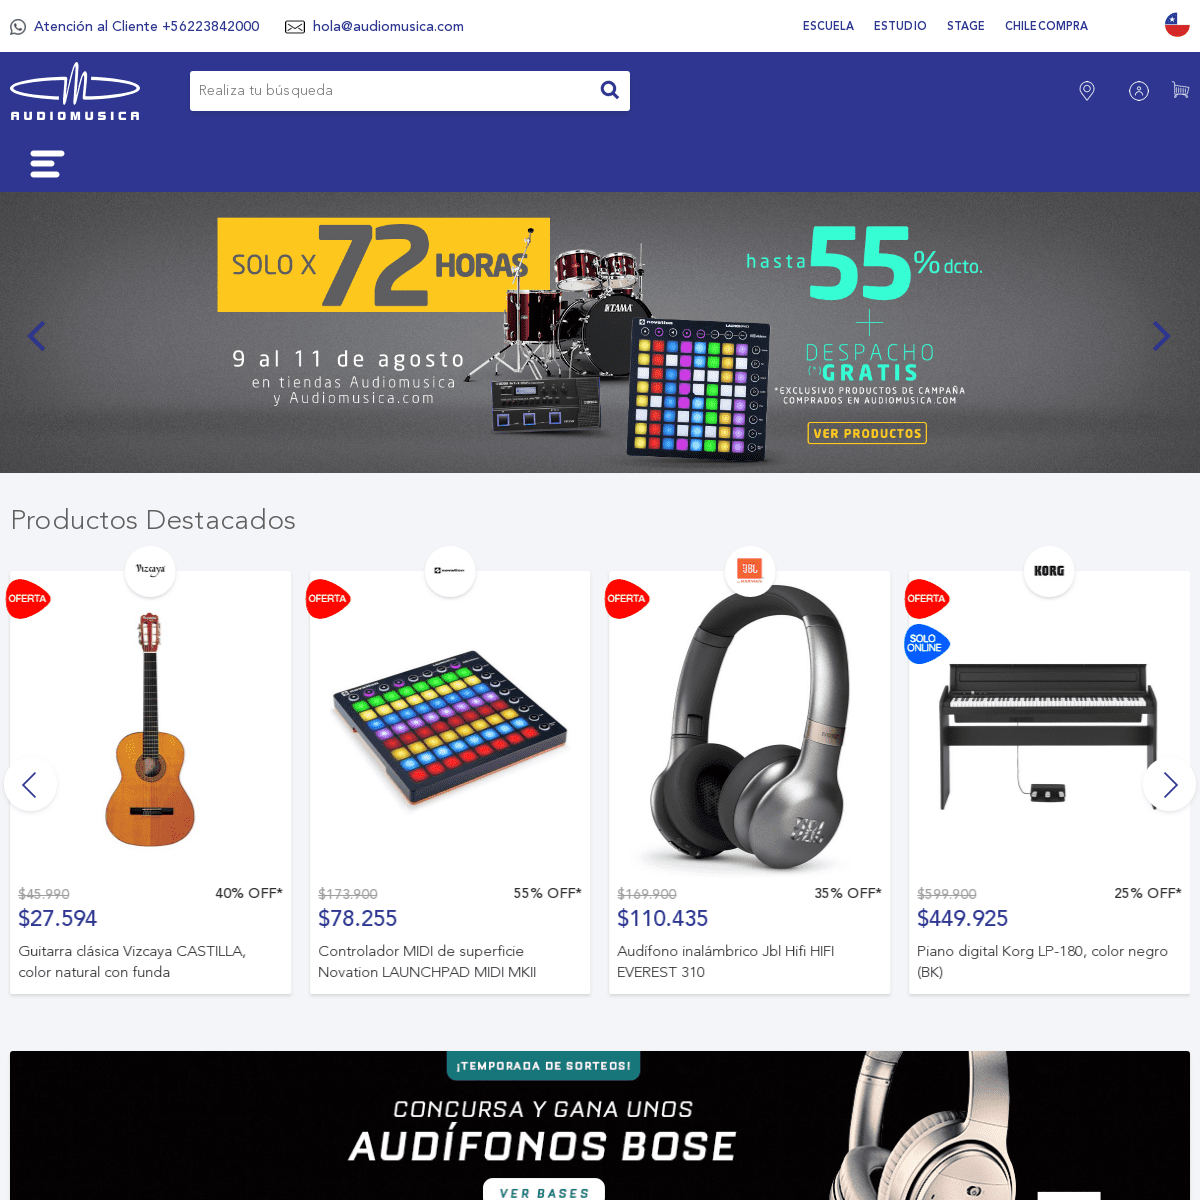 Audiomusica.com | Tienda especializada en Instrumentos Musicales | Audio Profesional | Dj & Home Studio